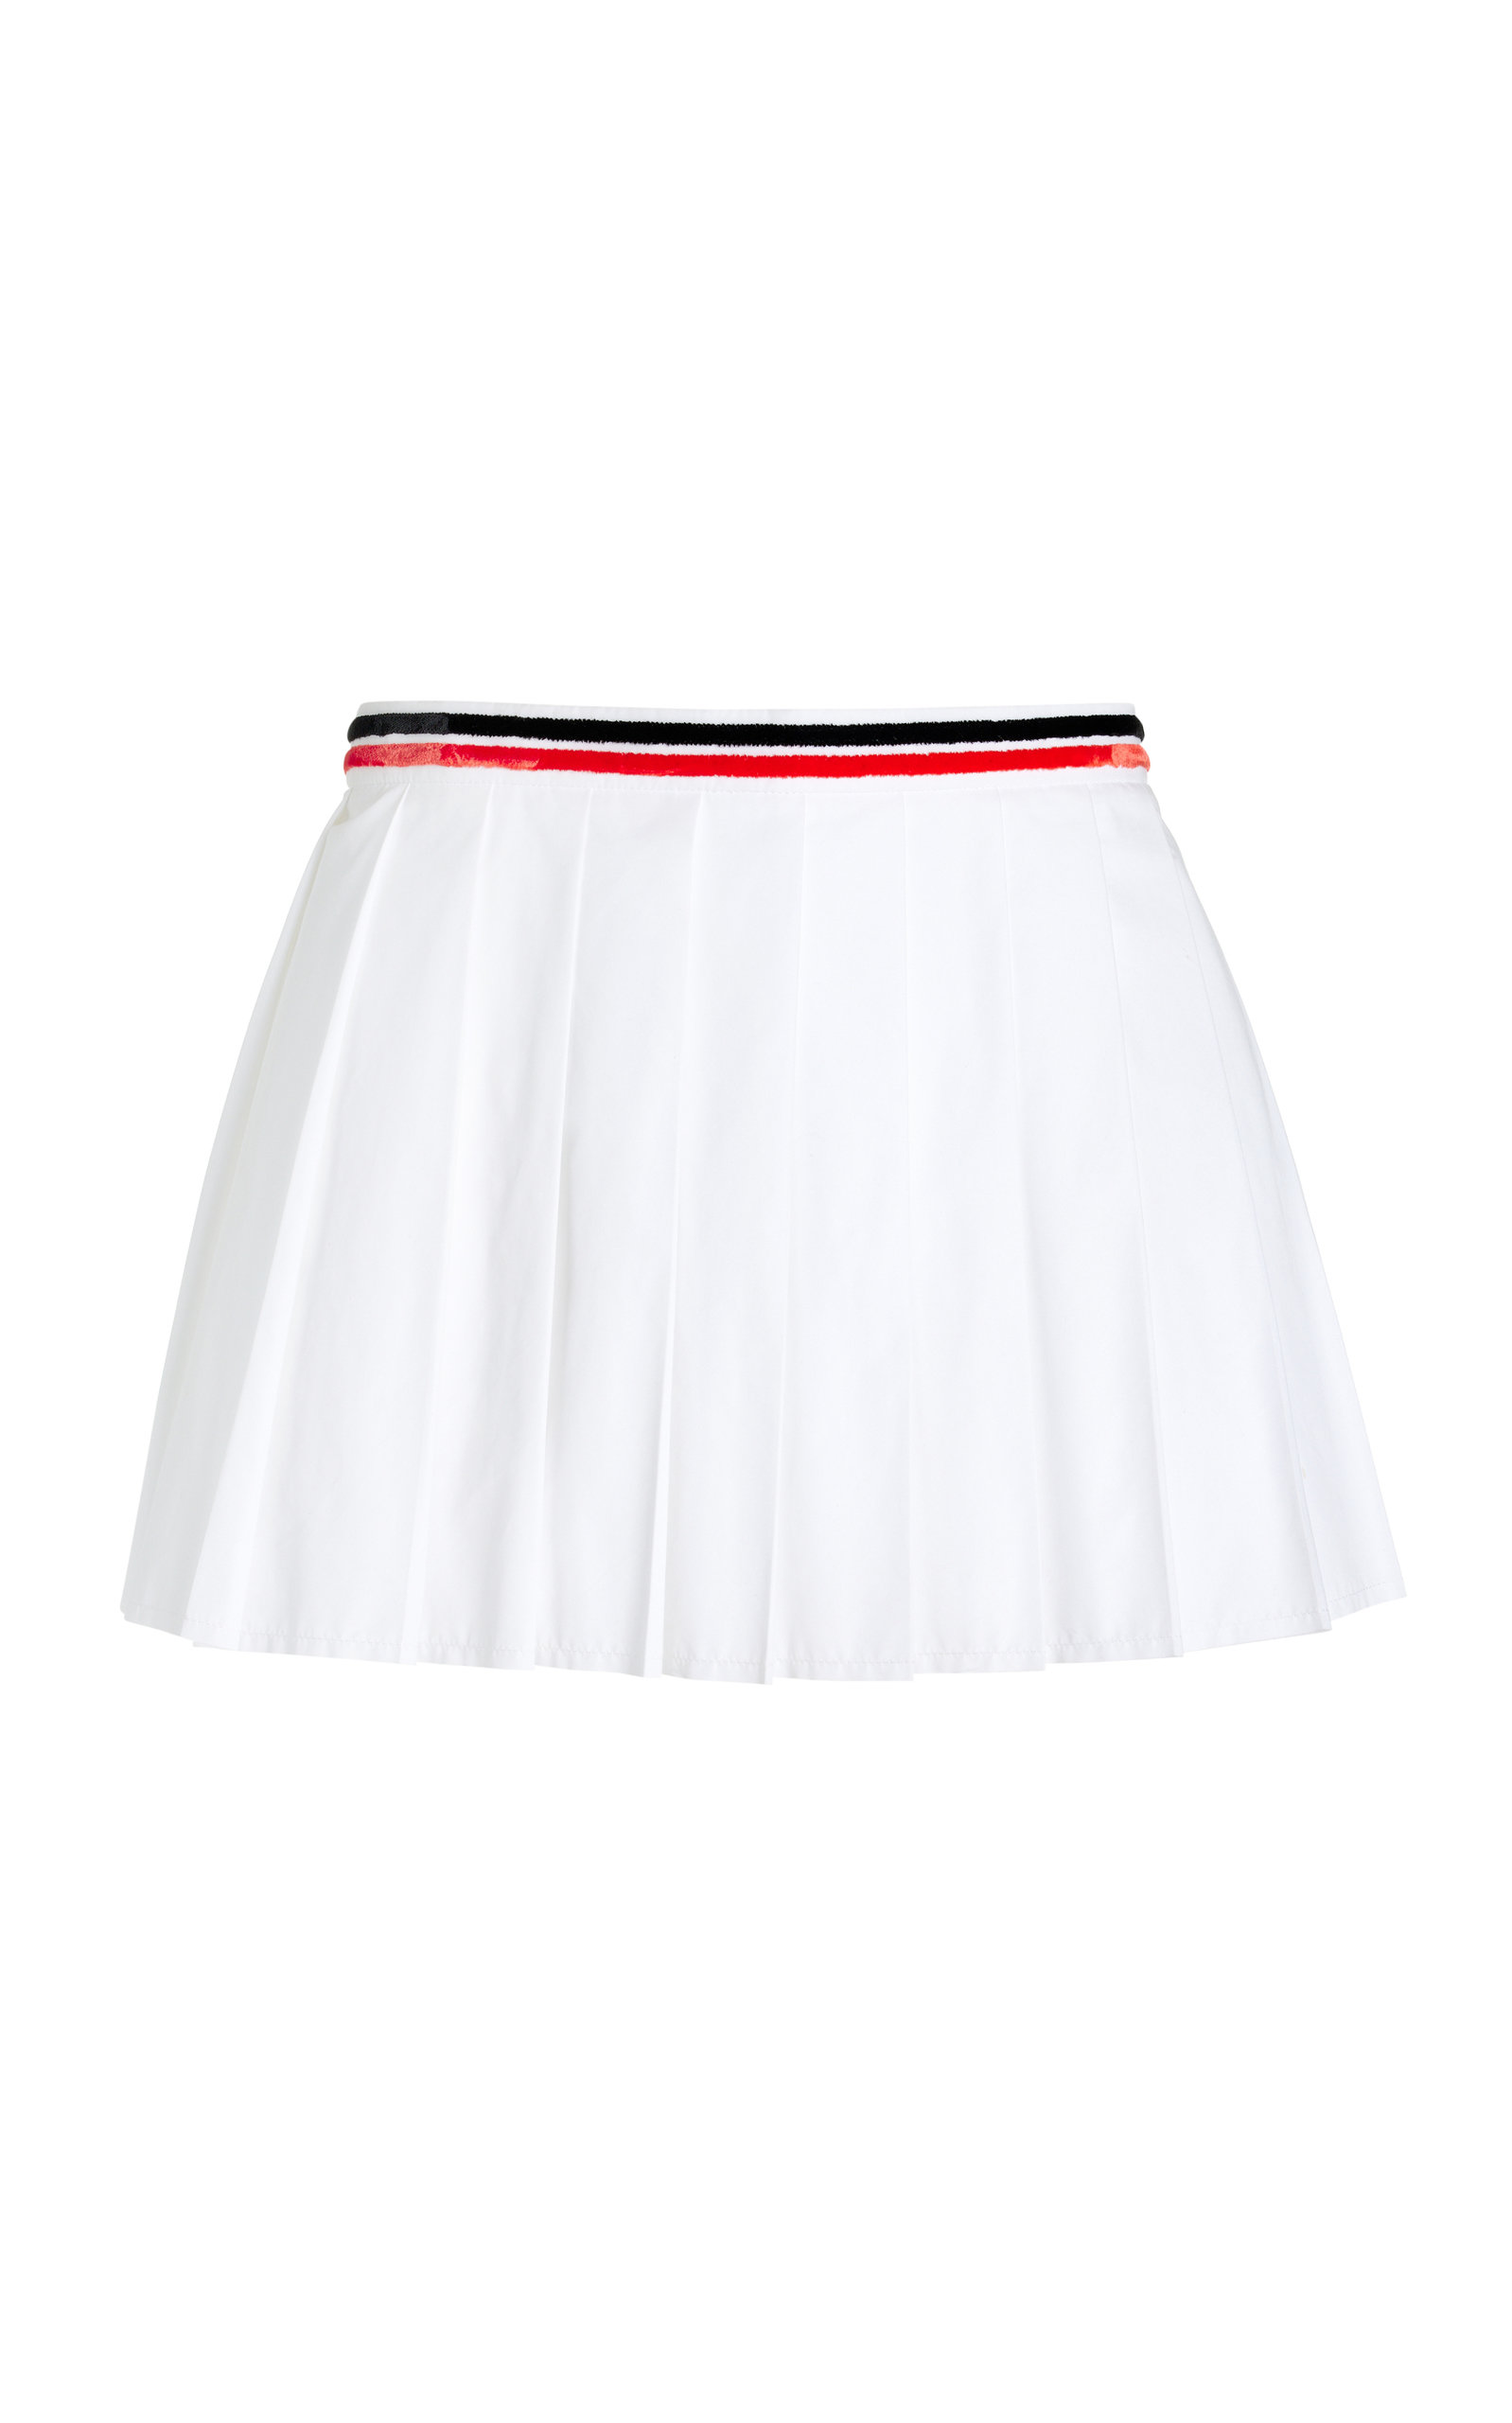 Miu Miu - Pleated Poplin Mini Skirt - White - IT 38 - Moda Operandi